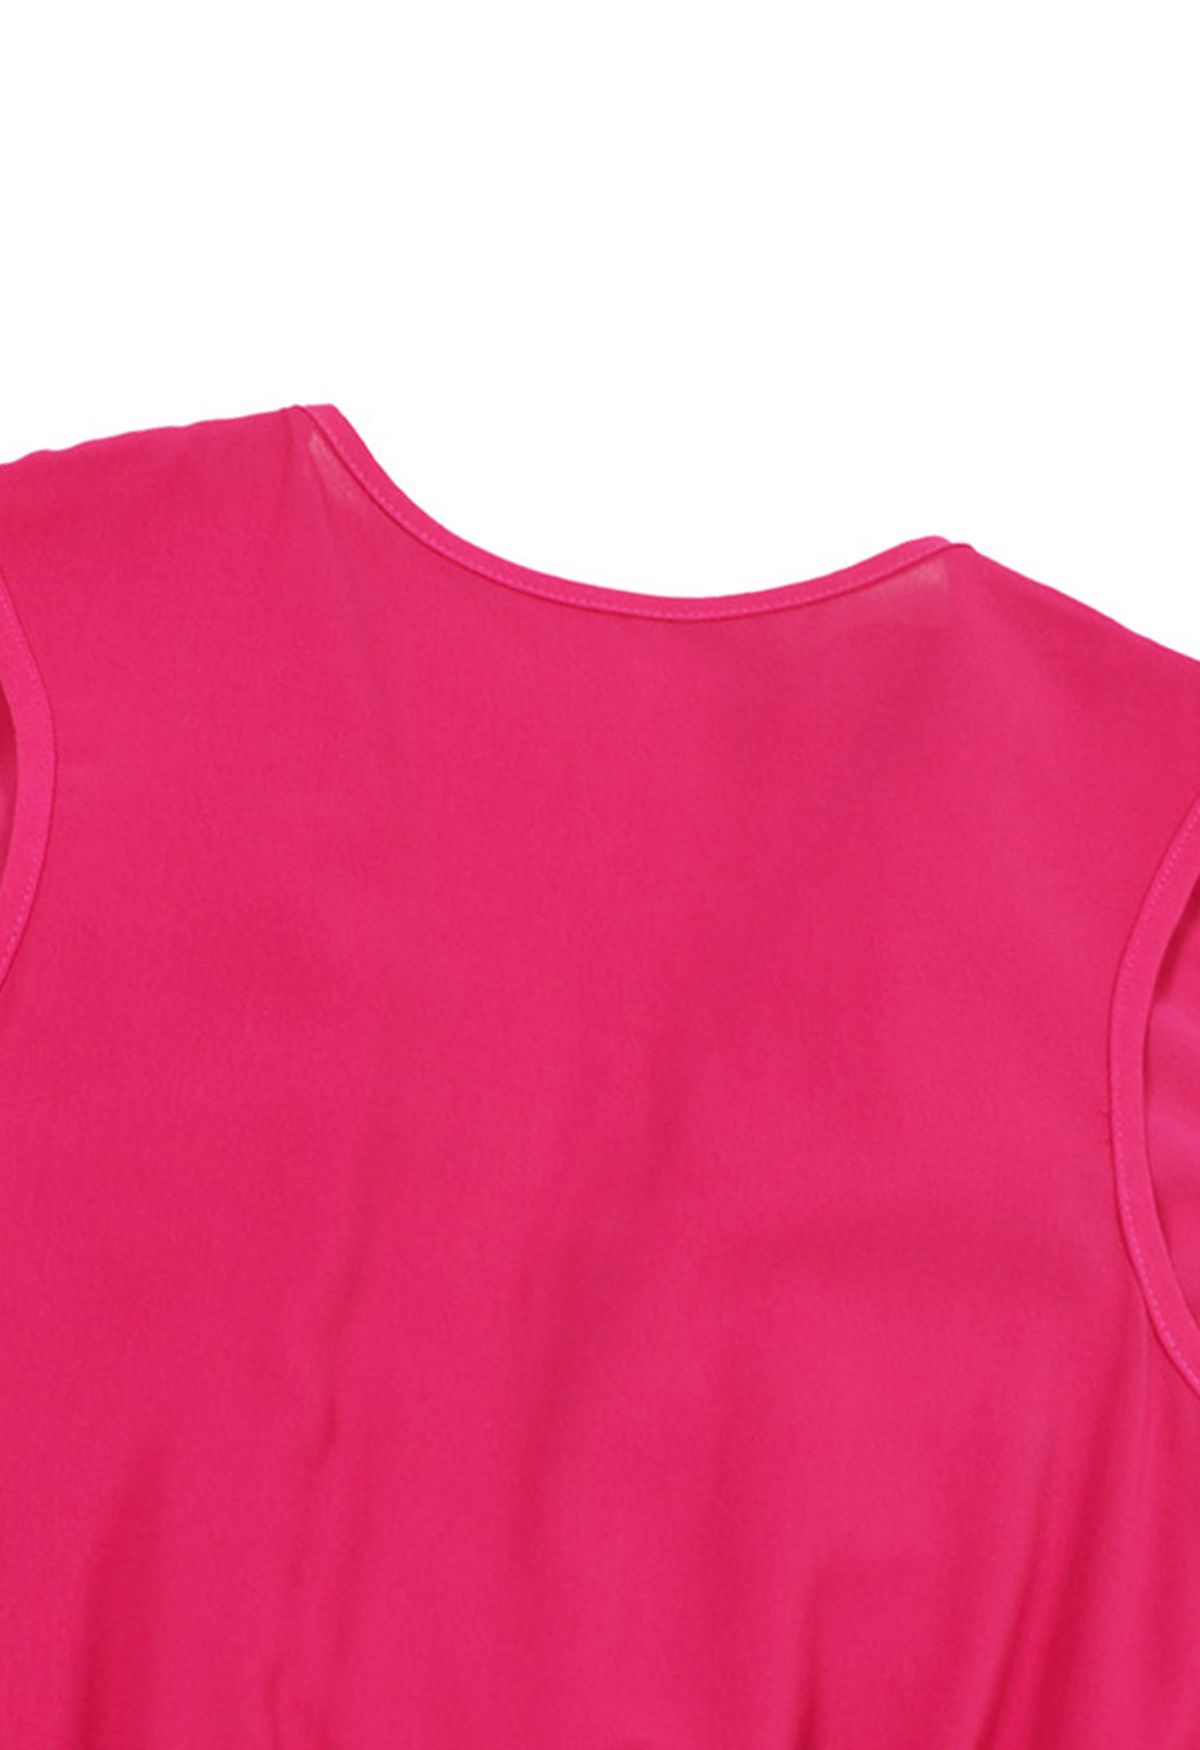 Gestufter Plissee-Jumpsuit in Wickeloptik mit Rüschen in Pink